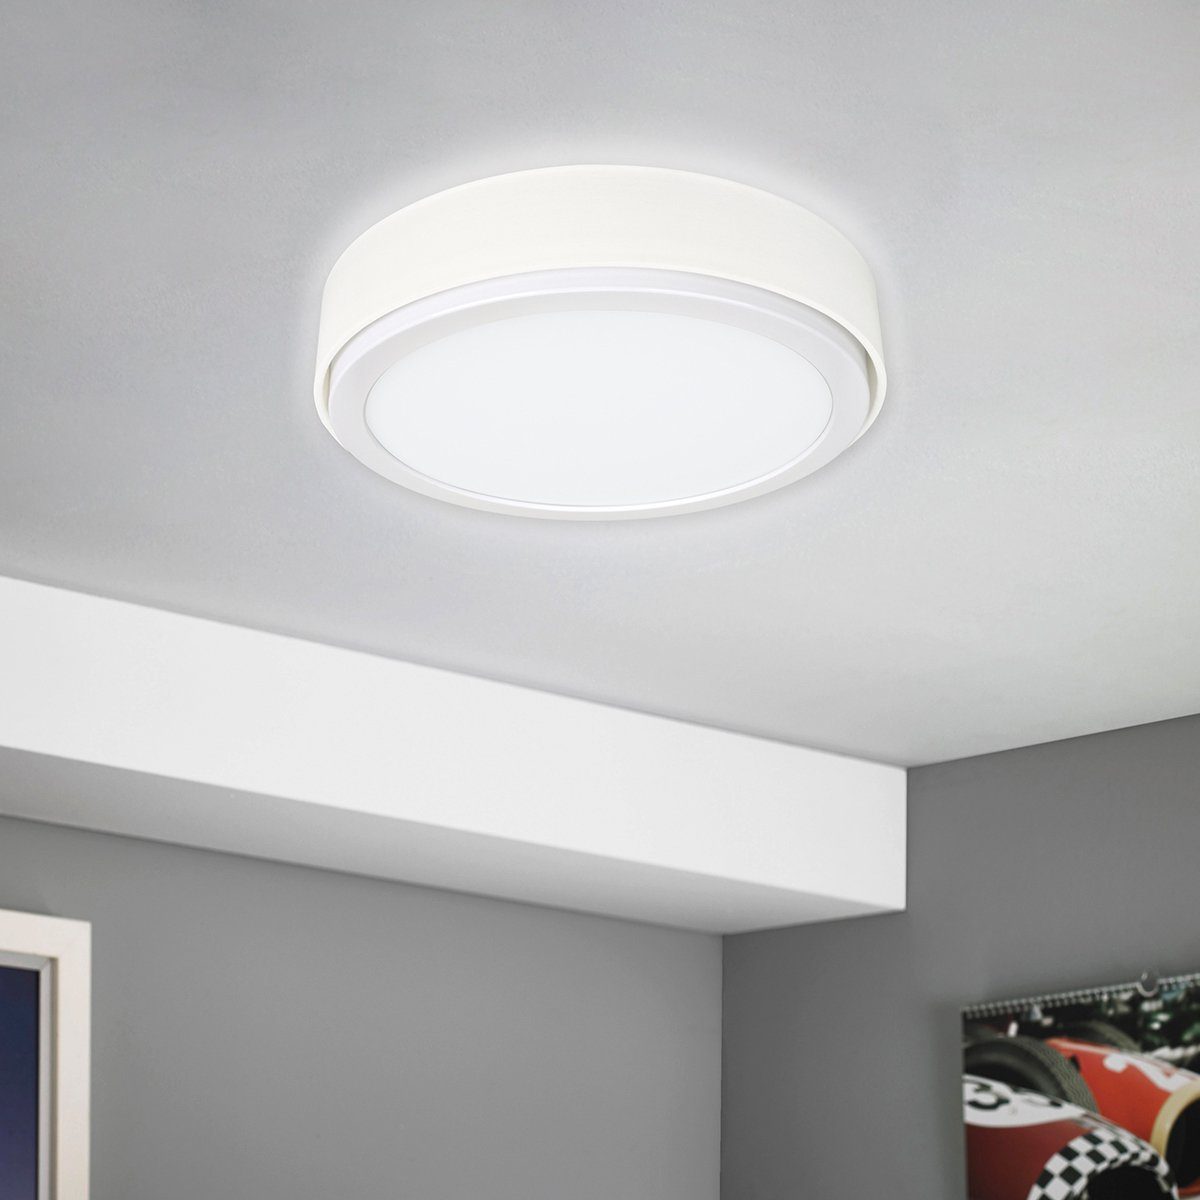 MeLiTec LED Deckenleuchte D85, warmweiß, LED, Panel, Leuchte, Wandleuchte, Deckenleuchte, 900 Lumen, Stoffschirm, Rund, Weiß